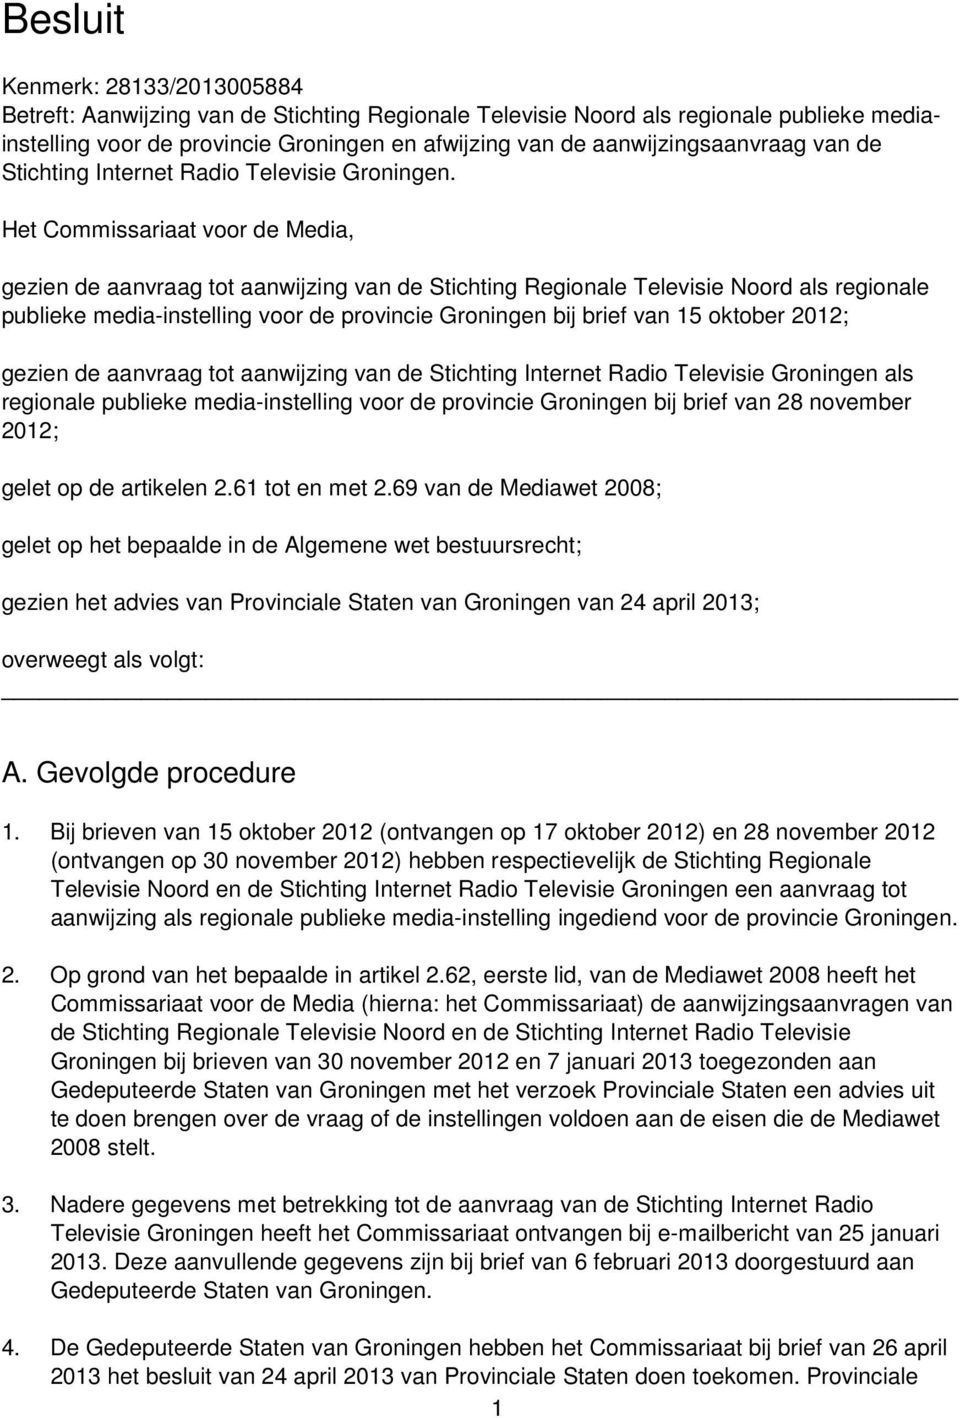 Het Commissariaat voor de Media, gezien de aanvraag tot aanwijzing van de Stichting Regionale Televisie Noord als regionale publieke media-instelling voor de provincie Groningen bij brief van 15